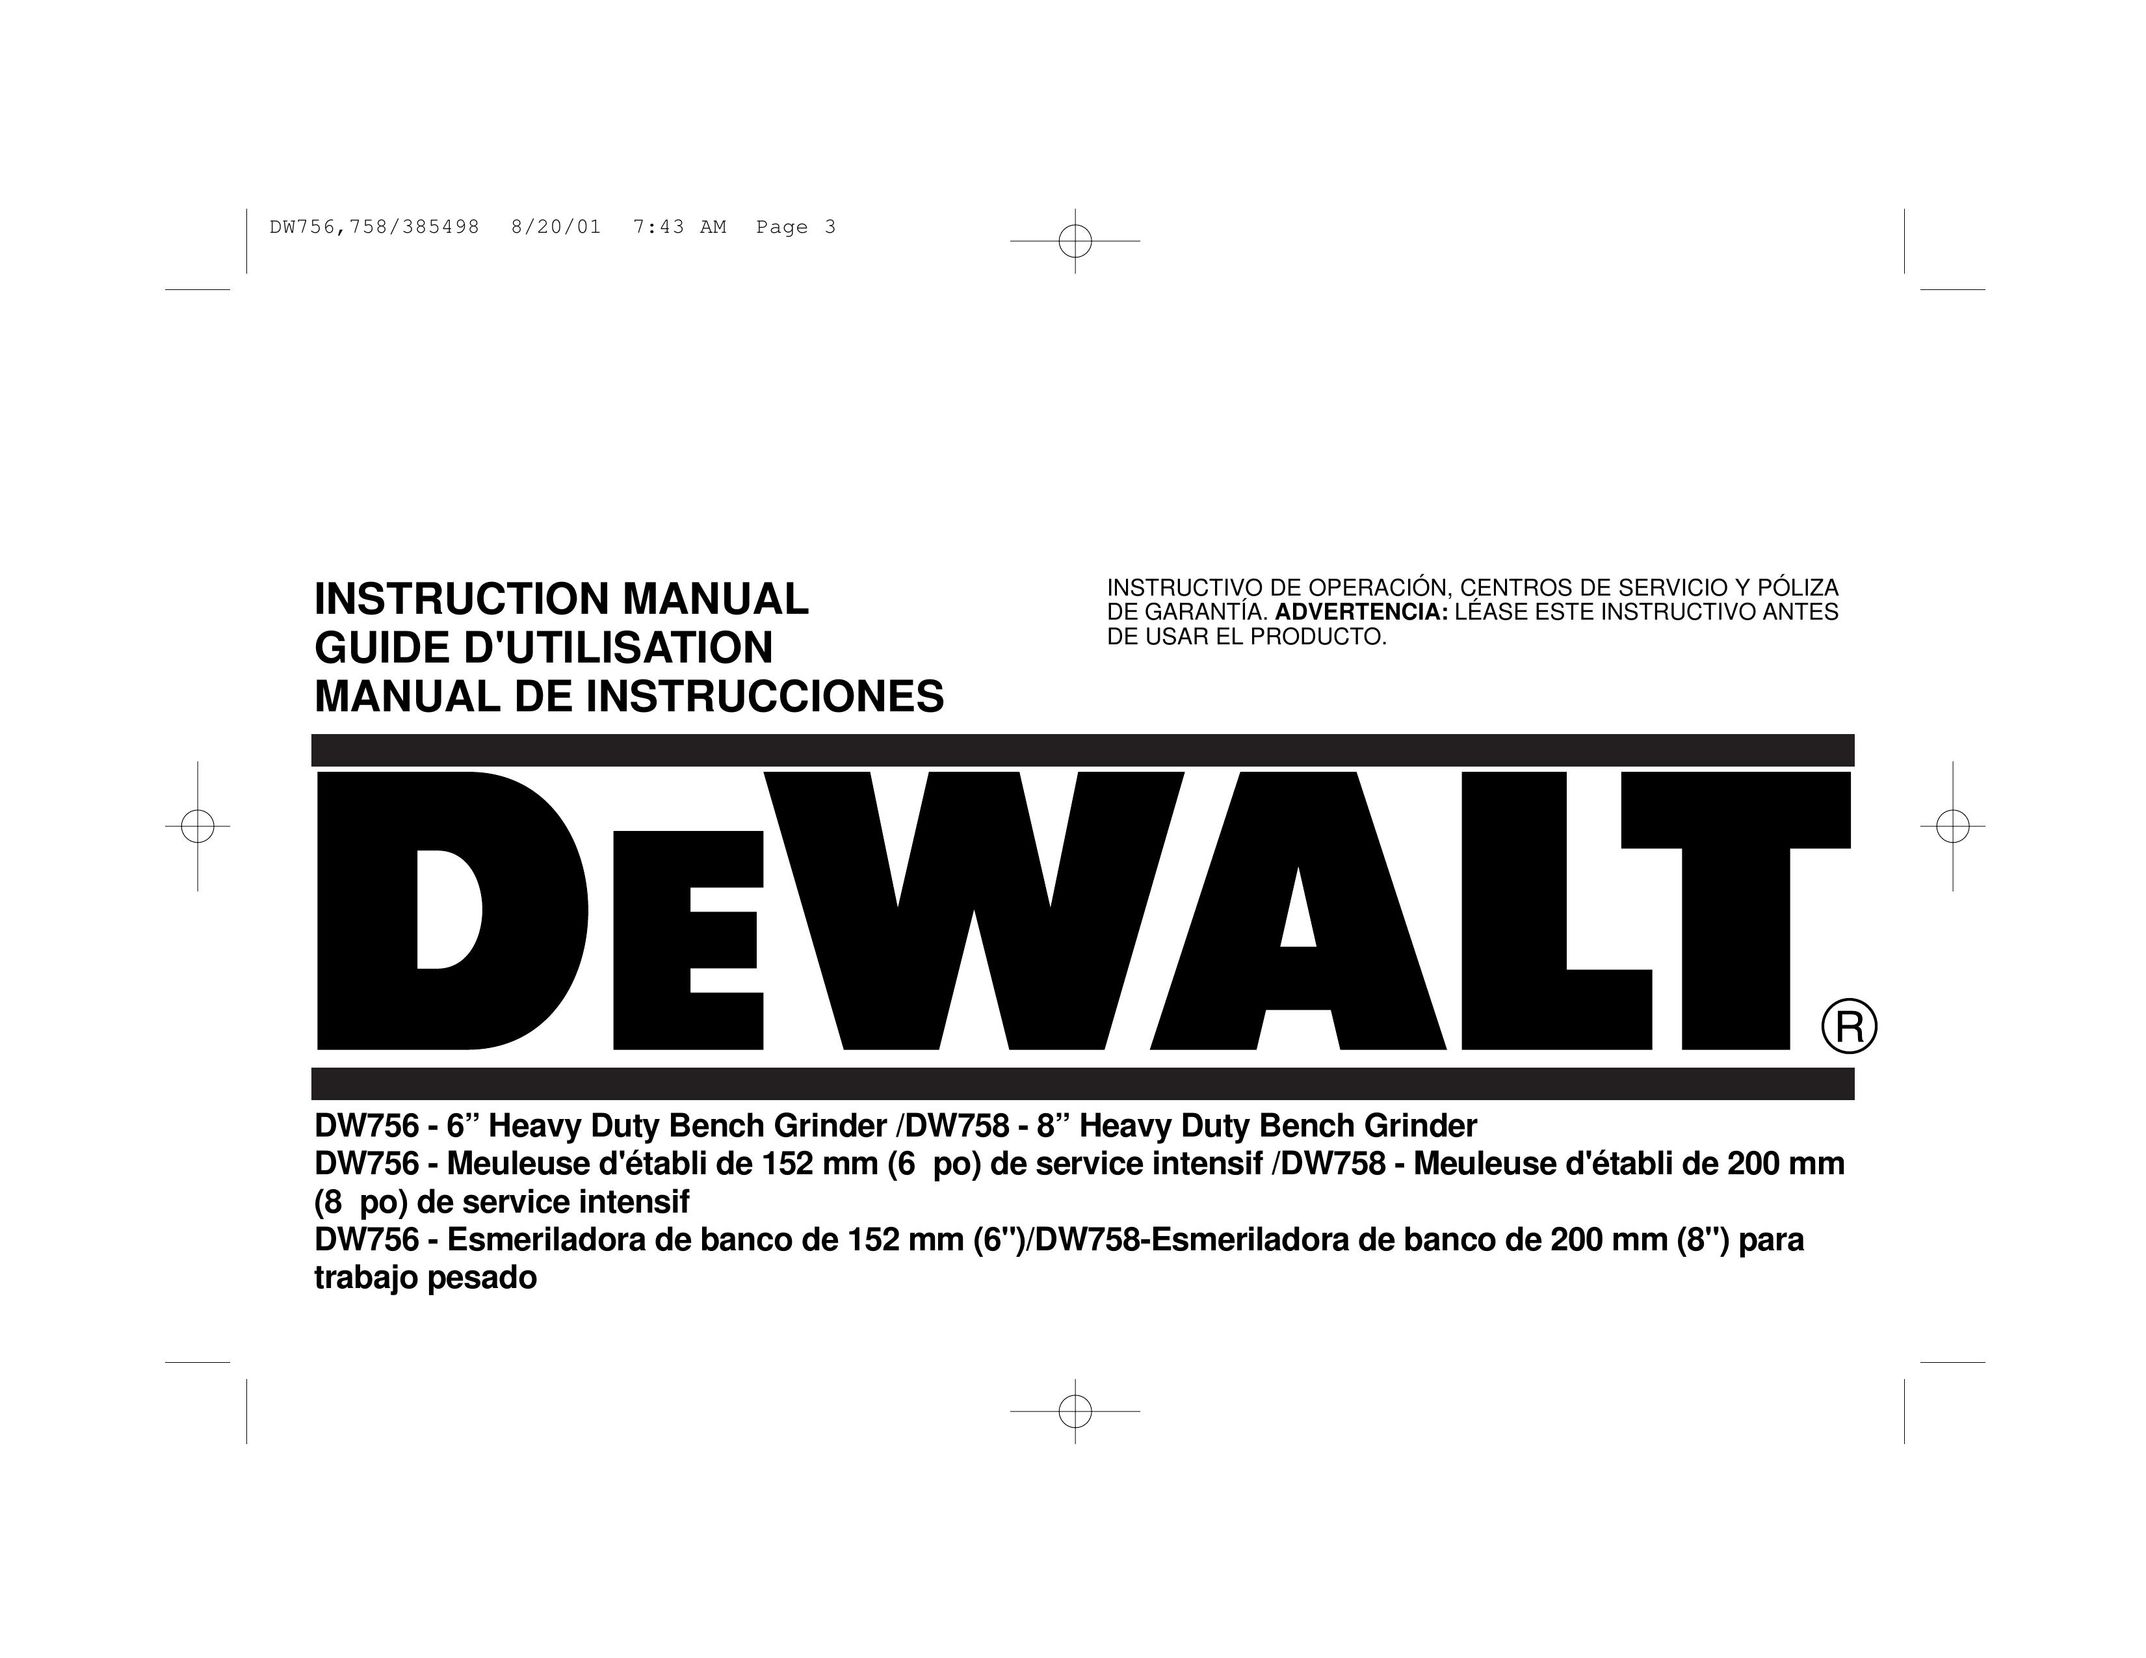 DeWalt DW756 Grinder User Manual